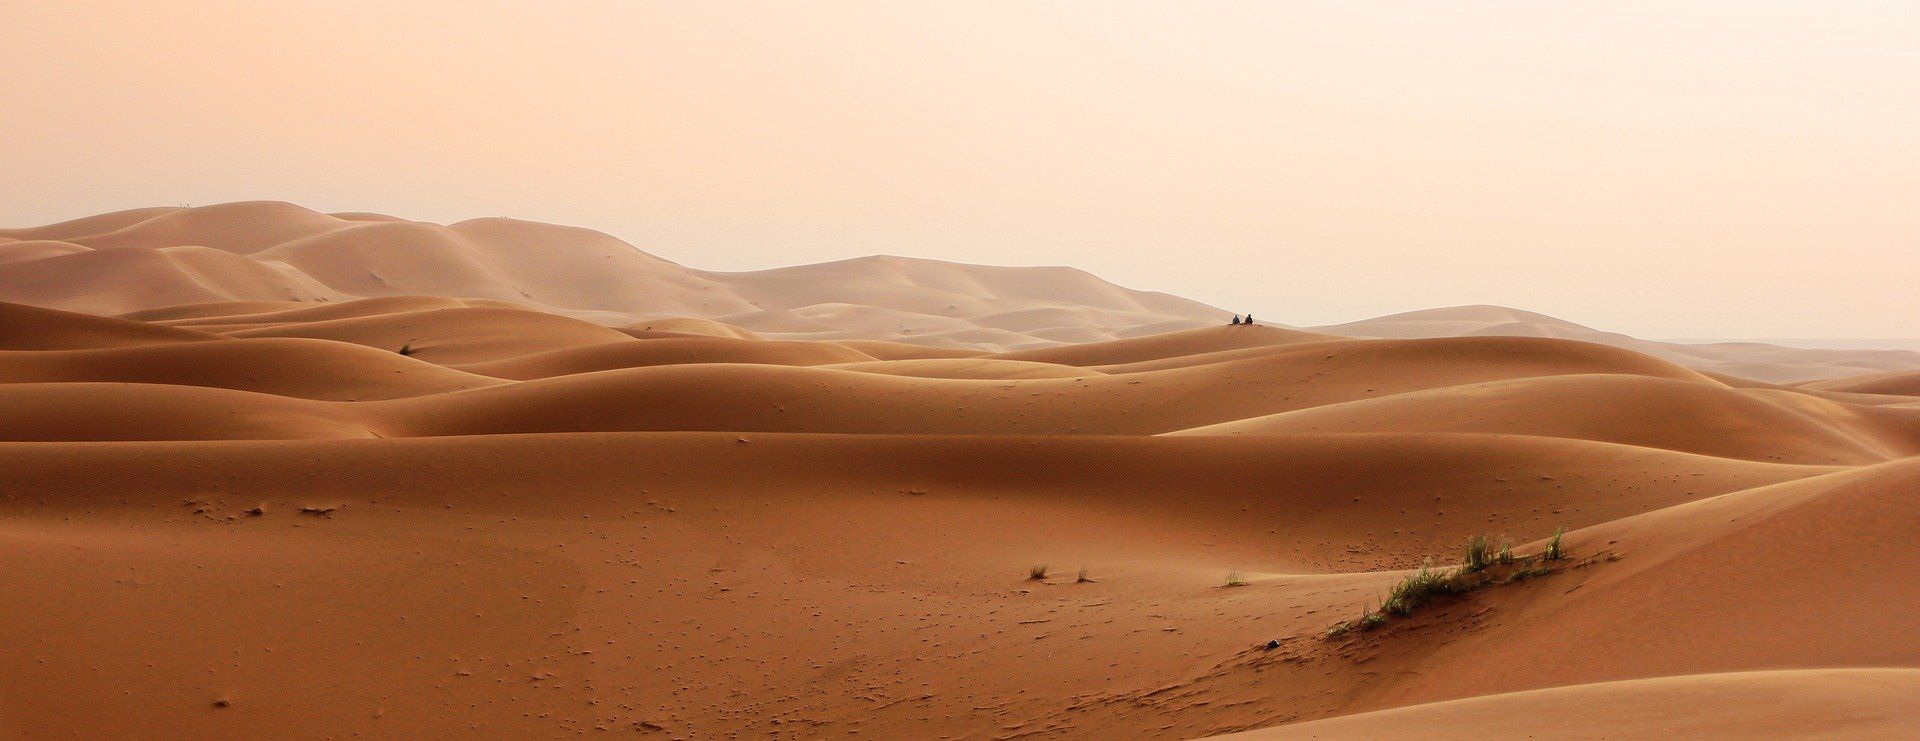 Die Stille der Wüste schafft Ruhe im Geist